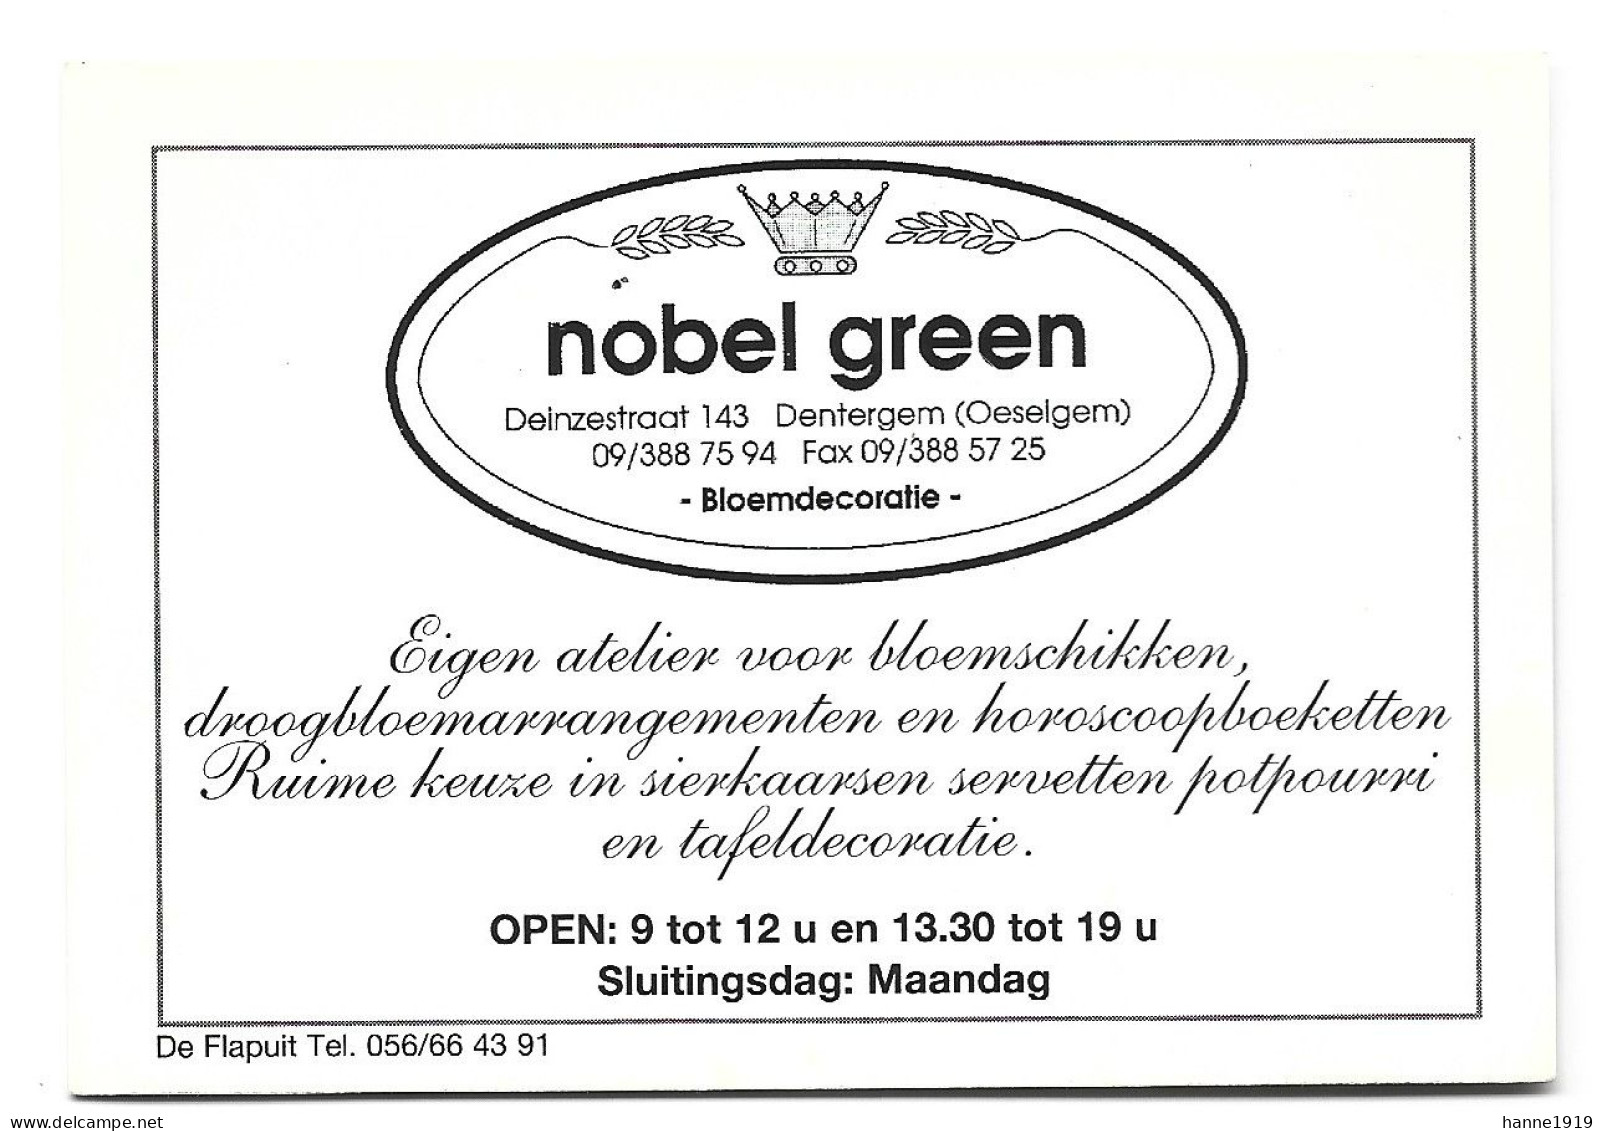 Dentergem Oeselgem Deinzestraat Atelier Nobel Green Etiquette Visitekaartje Htje - Visitekaartjes